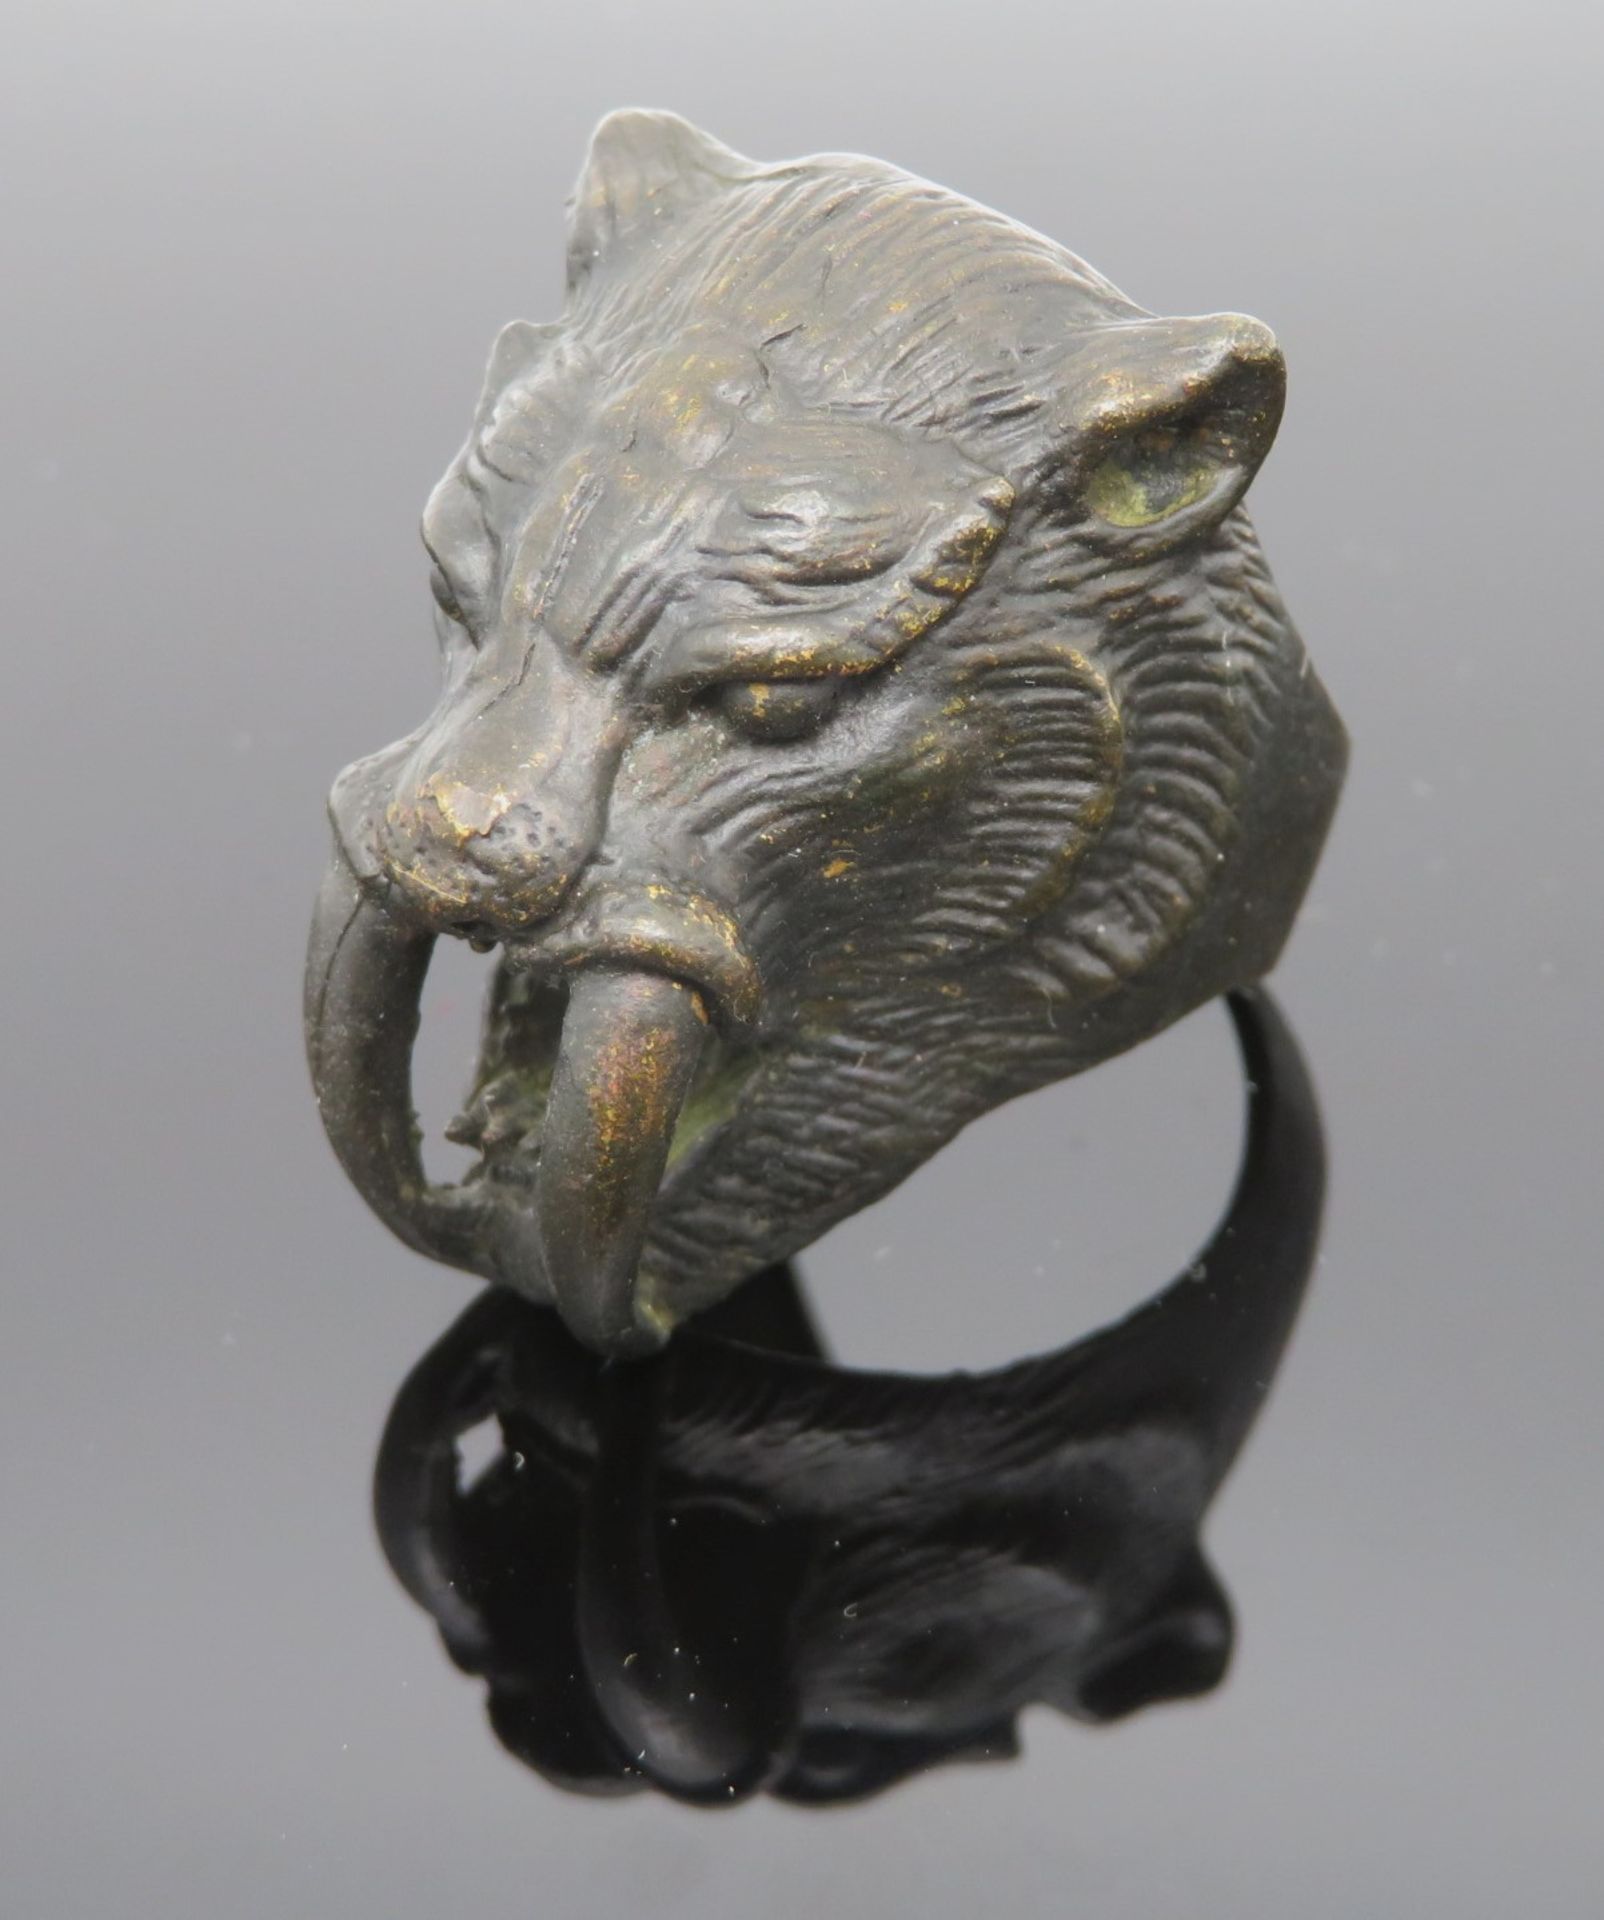 Ungewöhnlicher Ring, Kopf eines Säbelzahntigers, Bronze, Ringkopf 2,2 x 2,6 x 2,1 cm, Ringgr. 63.